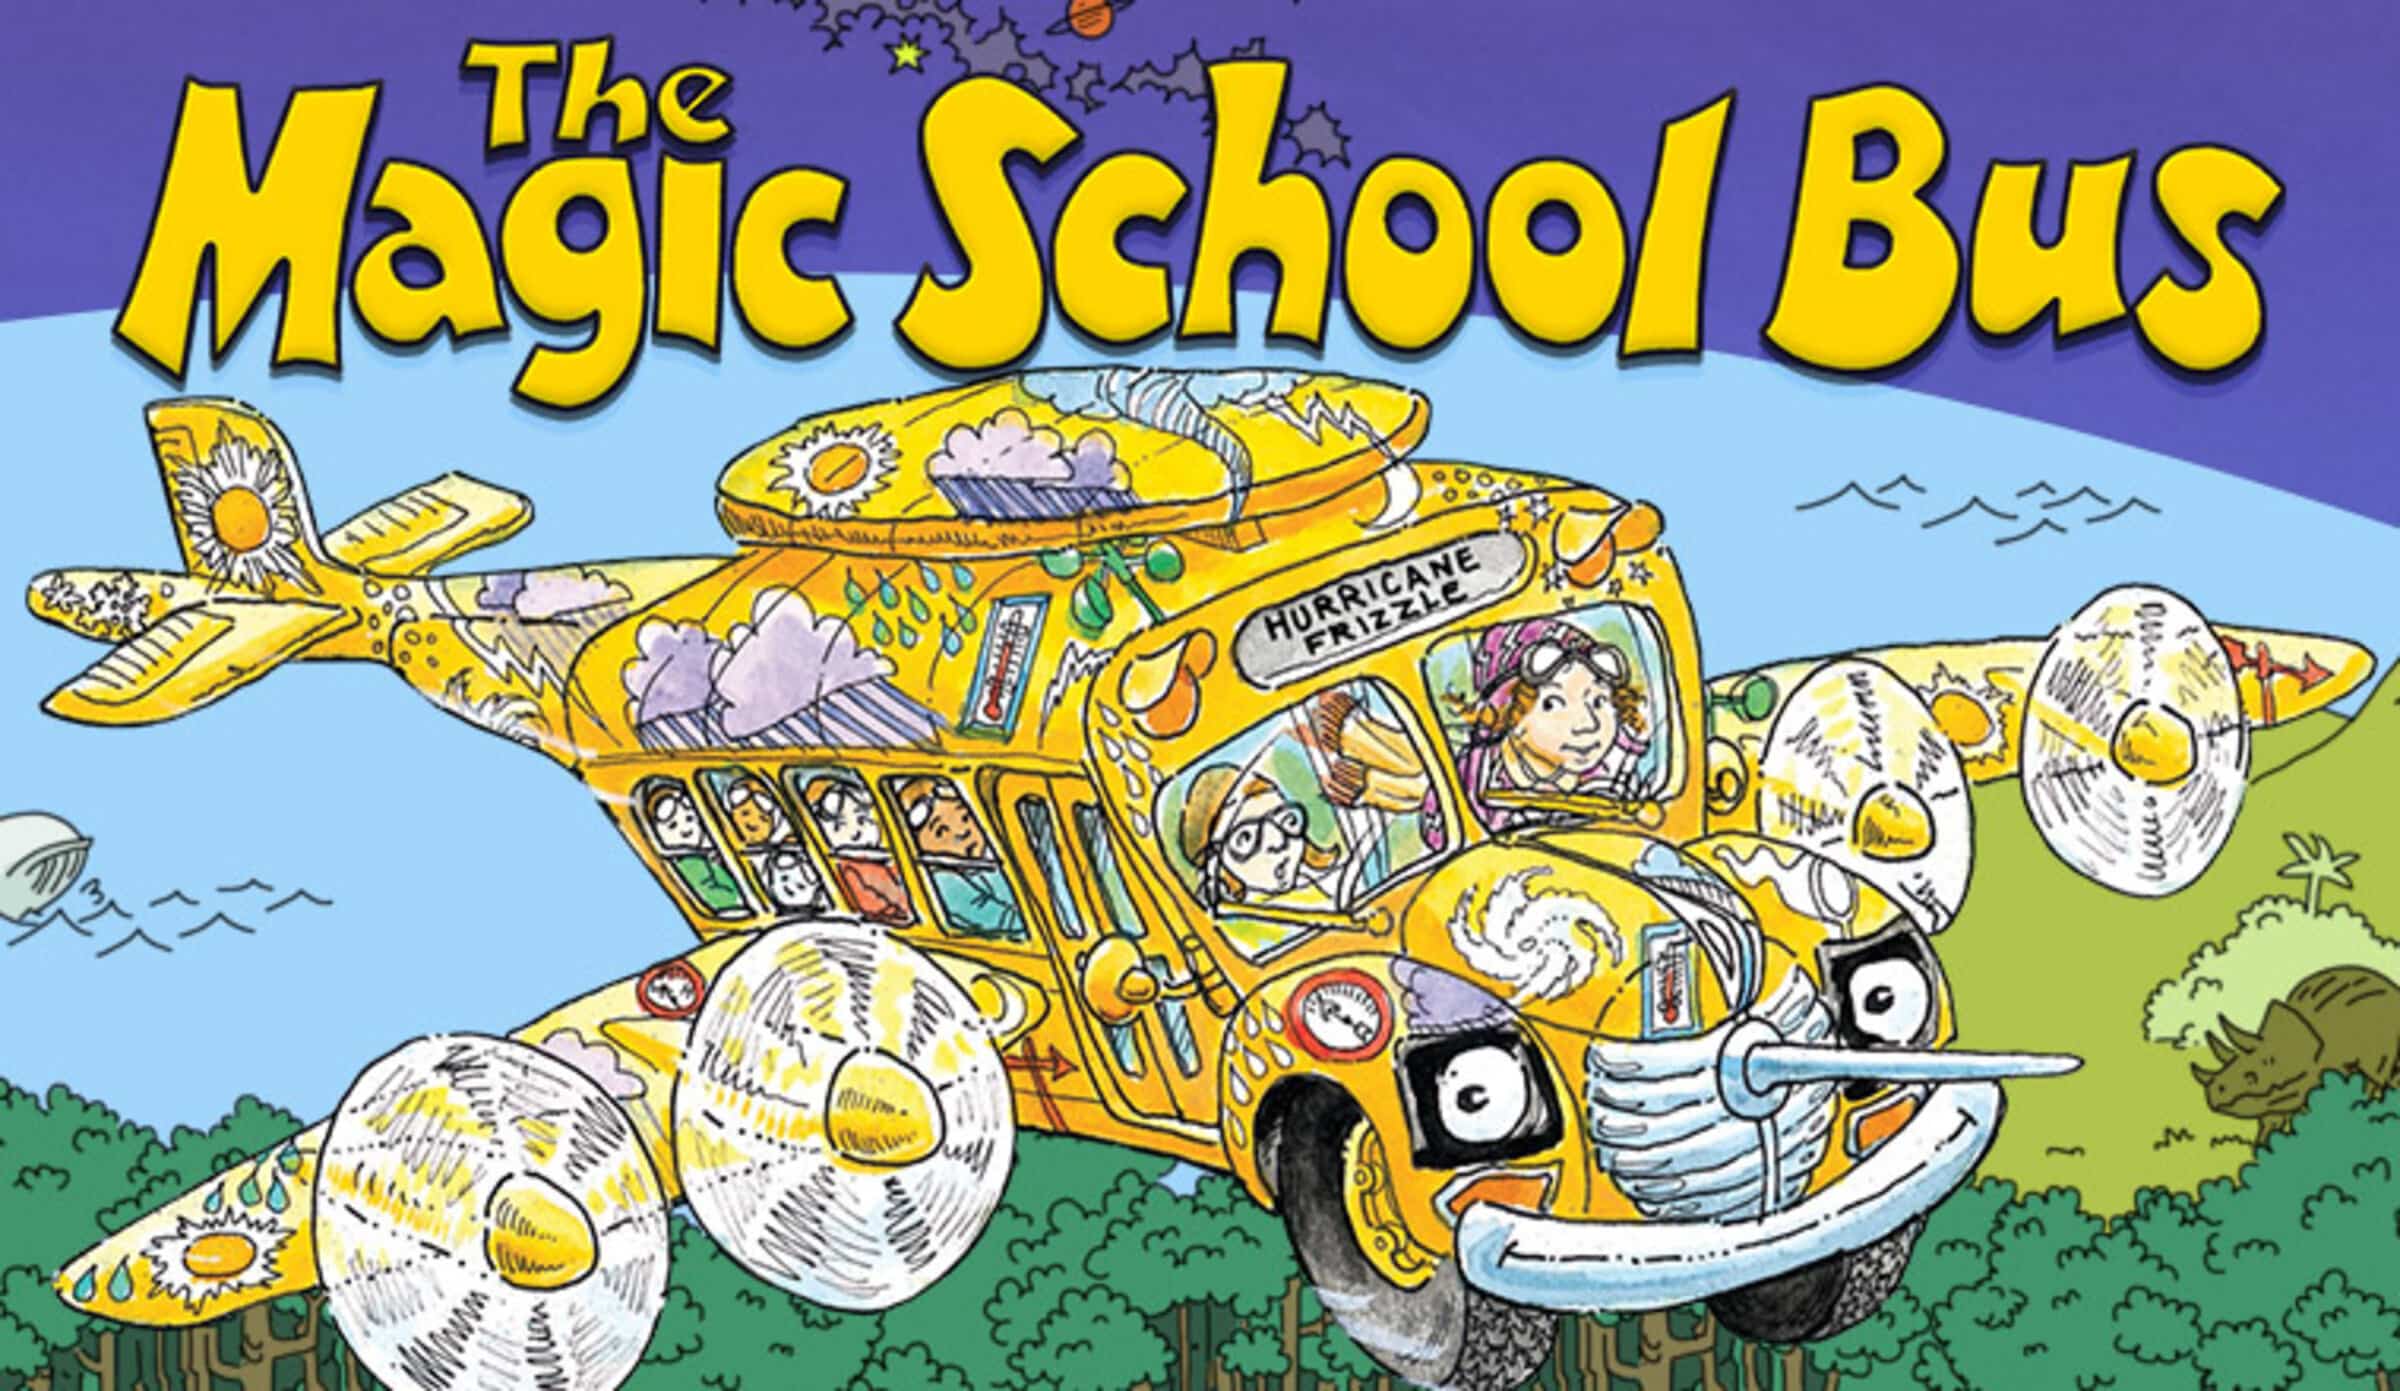 Magic school bus. The Magic School Bus. Волшебный школьный автобус. Волшебный школьный автобус Вики. The Magic School Bus (book Series).